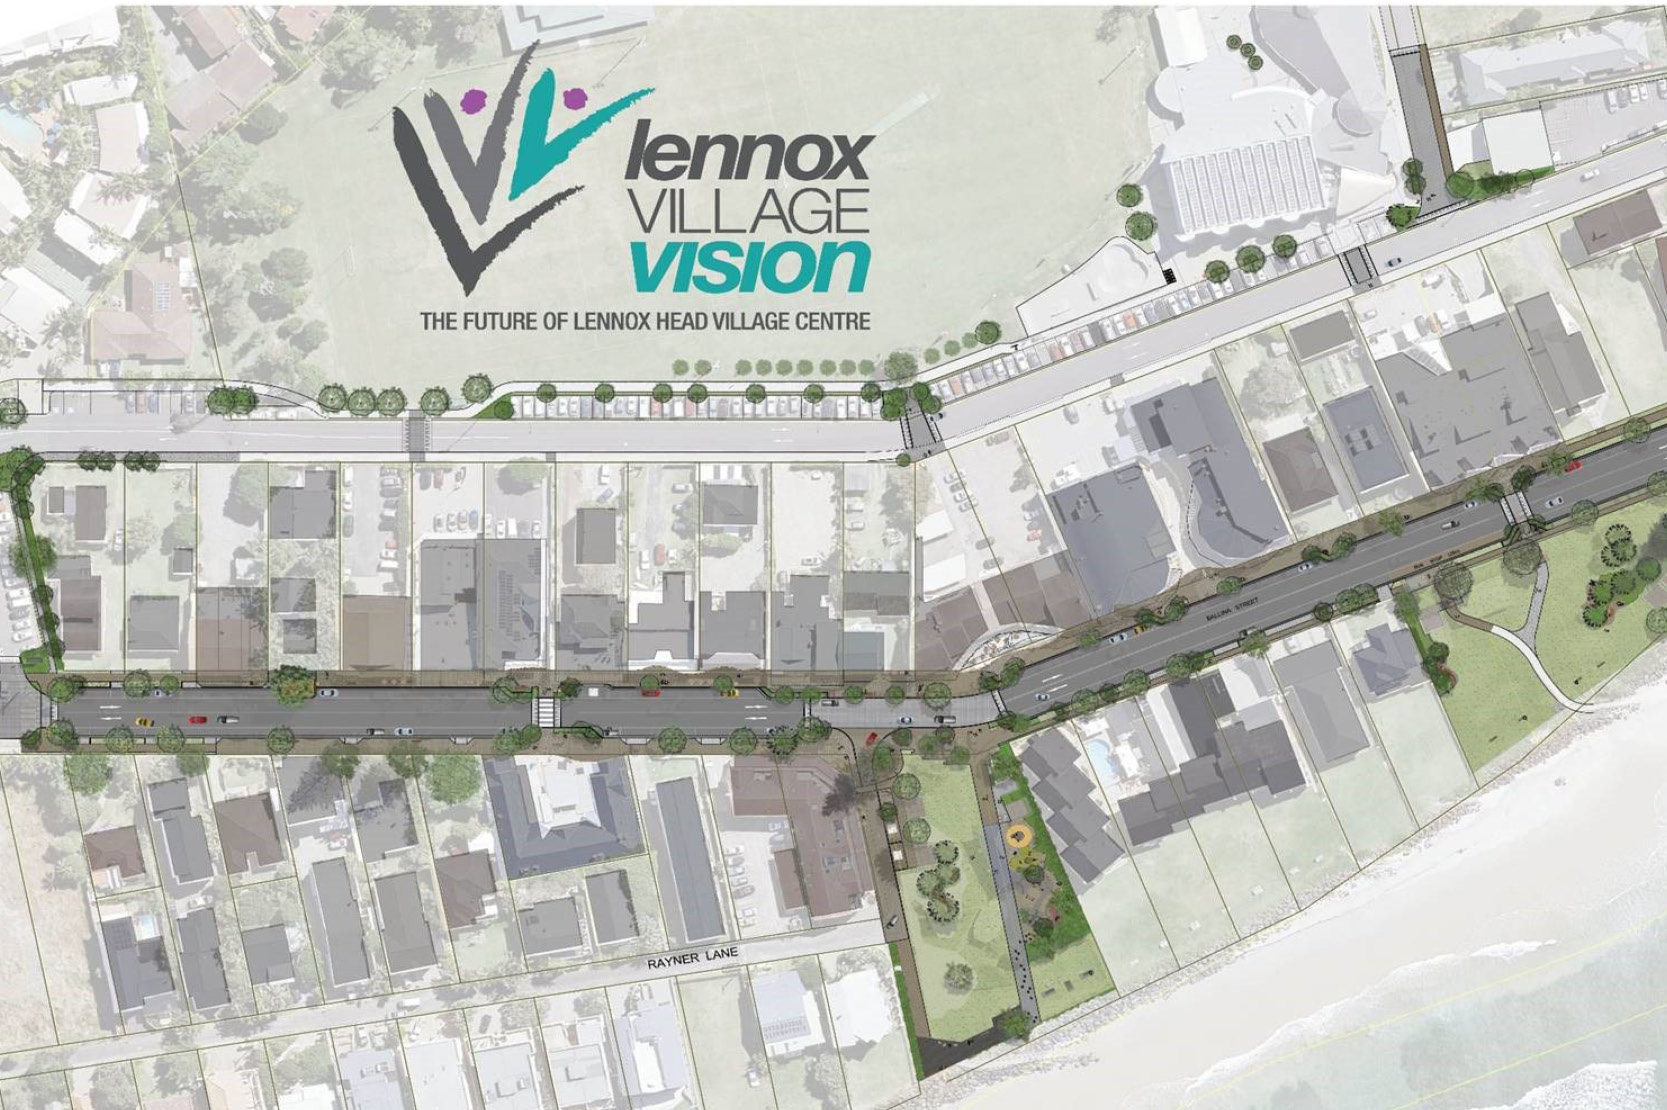 Lennox Village Vision - Stage 1 Works Underway